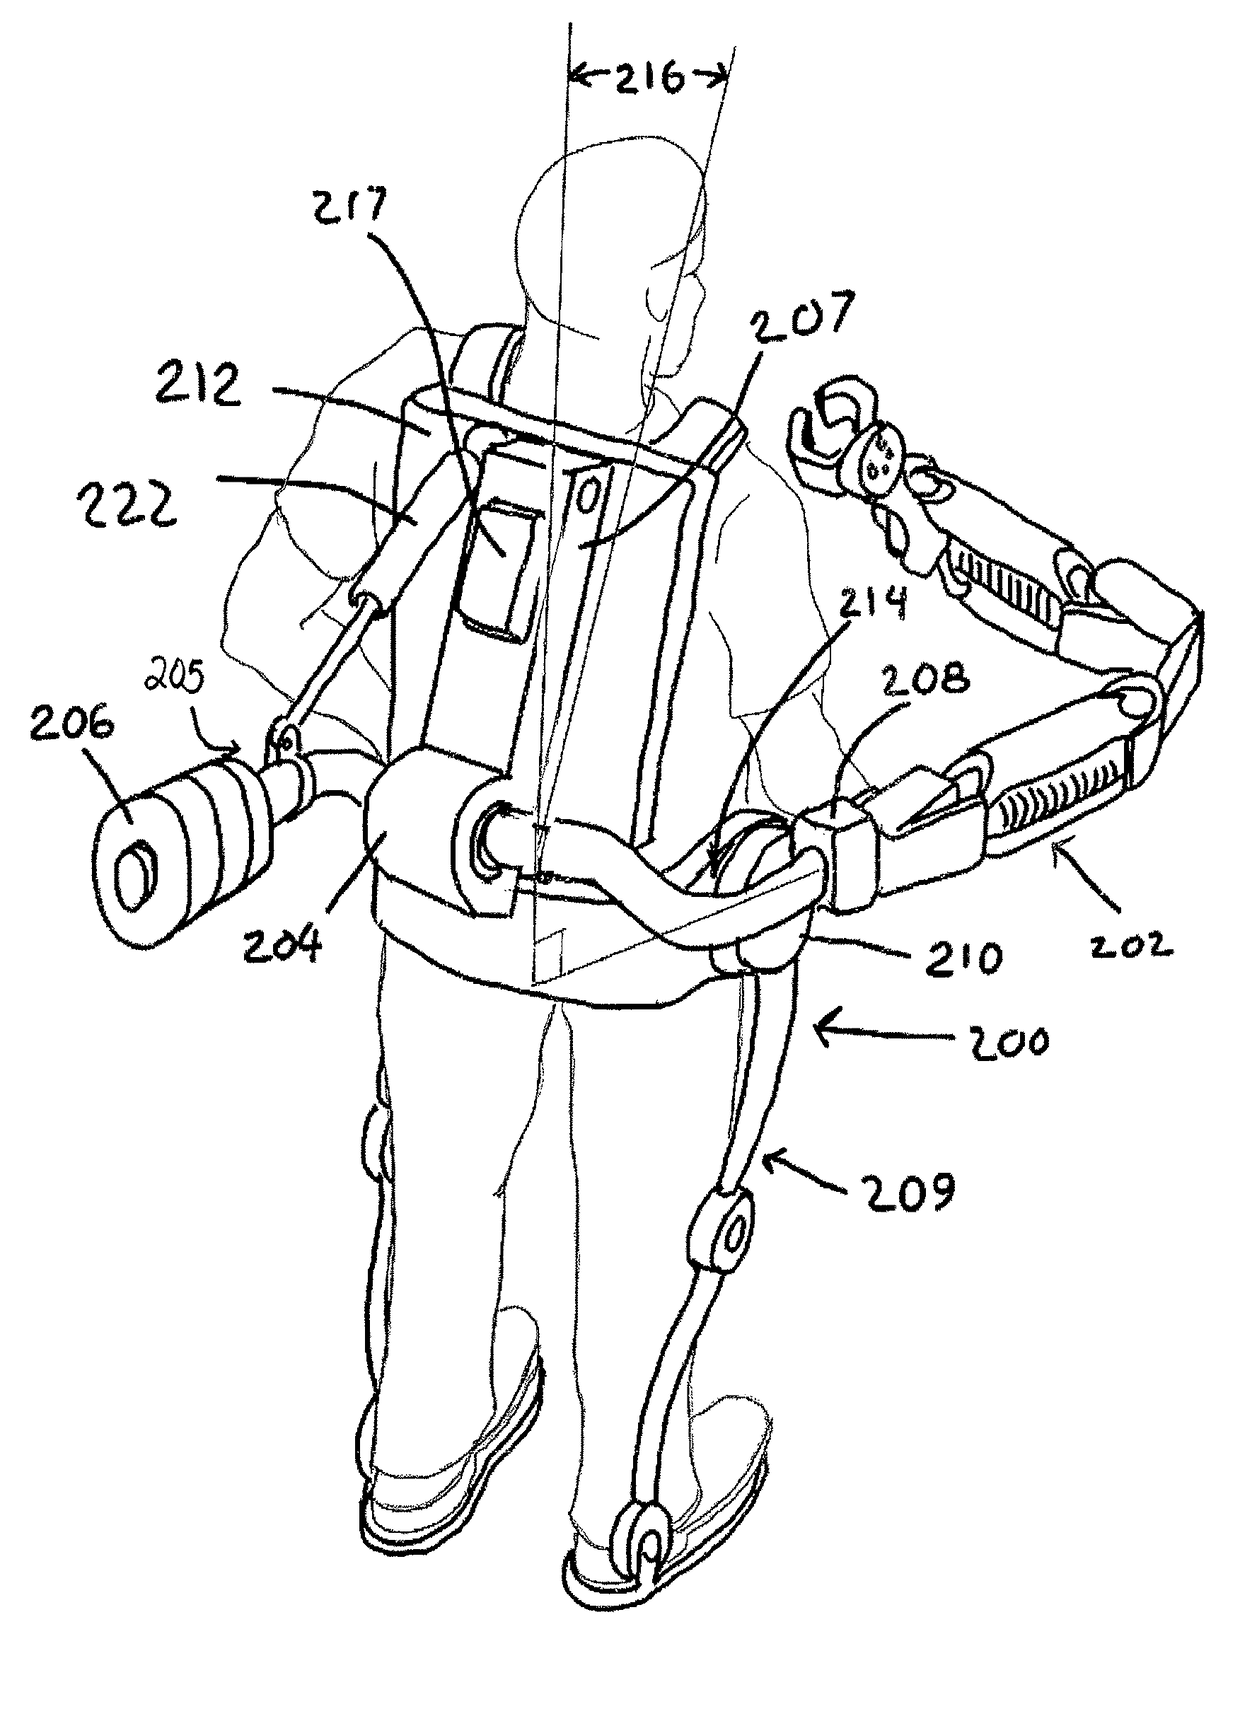 Exoskeleton arm interface